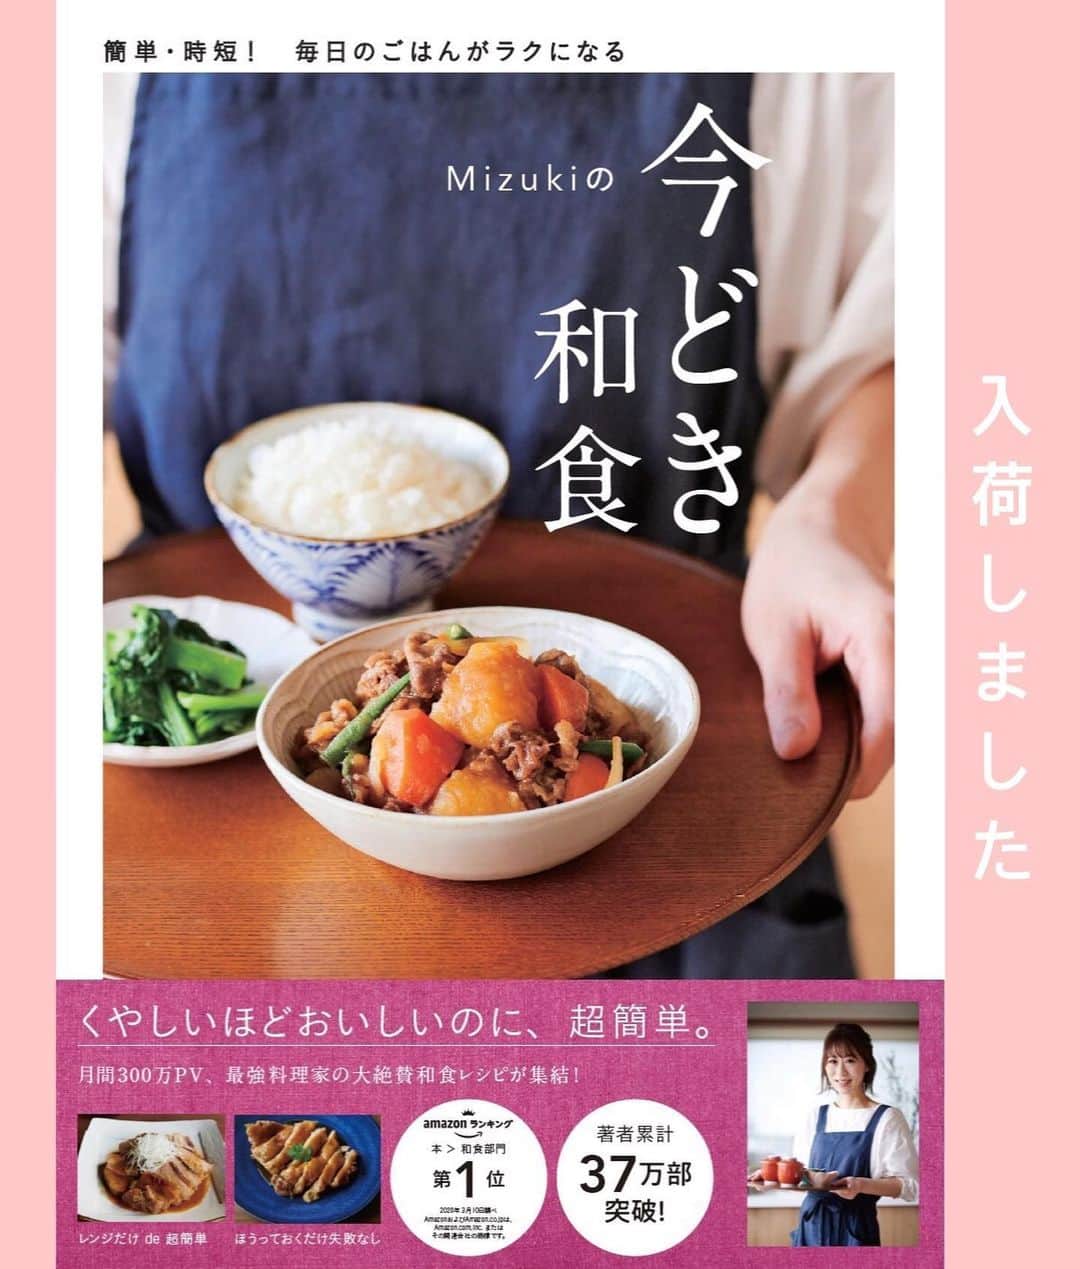 Mizuki【料理ブロガー・簡単レシピ】さんのインスタグラム写真 - (Mizuki【料理ブロガー・簡単レシピ】Instagram)「・﻿ 【レシピ】ーーーーーーー﻿ ♡ホケミ&サラダ油で♡﻿ レモンパウンドケーキ﻿ ーーーーーーーーーーーー﻿ ﻿ ﻿ ﻿ おはようございます(*^^*)﻿ ﻿ 今日ご紹介させていただくのは﻿ ホットケーキミックスで作る﻿ レモンパウンドケーキ♡﻿ 爽やかなレモンの香りと﻿ キュンと甘酢っぱいアイシングが﻿ 相性抜群ですよ〜(*´艸`)﻿ ﻿ バターなしでお手軽♩﻿ 混ぜて焼くだけの超簡単レシピです♡﻿ 自家製ホケミ(4/17紹介)でもできるので﻿ よかったらお試し下さいね(*^^*)﻿ ﻿ ﻿ ﻿ ーーーーーーーーーーーーーーーーーーーー﻿ 【18cmパウンド型】﻿ ●卵...1個﻿ ●砂糖...大4﻿ ●牛乳...大3﻿ ●サラダ油...60g﻿ ●レモン汁...大1.5﻿ ●(あれば)レモンの皮のすり下ろし...1/2個分﻿ ホットケーキミックス...150g﻿ ［アイシング］粉糖...50g﻿ ［アイシング］レモン汁...小2﻿ ﻿ ﻿ (準備)オーブンを170度に予熱する。型にシートを敷いておく。﻿ 1.ボウルに●を入れてよく混ぜる。続けてホットケーキミックスも加えて更に混ぜる。﻿ 2.型に注ぎ、予熱したオーブンで35〜40分焼く。焼けたらアミにのせて冷ます。﻿ 3.アイシングの材料を混ぜ、完全に冷めたパウンドケーキにかける。﻿ ーーーーーーーーーーーーーーーーーーーー﻿ ﻿ ﻿ ﻿ 《ポイント》﻿ ♦︎レモンの皮のすり下ろしを少し残し、仕上げにトッピングしています♩﻿ ♦︎焼き始め10分で真ん中に切り込みを入れると綺麗に割れます♩﻿ ♦︎アイシングはなくても美味しいですよ♩﻿ ﻿ ﻿ ﻿ ﻿ ﻿ ﻿ ﻿ 🔻入荷しました🔻﻿ ストーリーにリンク貼っています🙇‍♀️﻿ ＿＿＿＿＿＿＿＿＿＿＿＿＿＿＿＿＿＿＿﻿ 📕\ \ 新刊発売中 / /📕﻿ 簡単・時短！ 毎日のごはんがラクになる﻿ ✨🦋 【 #Mizukiの今どき和食 】🦋✨﻿ ＿＿＿＿＿＿＿＿＿＿＿＿＿＿＿＿＿＿＿﻿ ﻿ なるべく少ない材料で﻿ 手間も時間も省きながら﻿ 簡単にできるおいしい和食レシピ♩﻿ 簡単に失敗なくマスターできる一冊で﻿ もっと気軽に、カジュアルに﻿ 和食を楽しんで下さいね(*^^*)﻿ ﻿ ﻿ ーーー ⭐️PART.1 メインおかず ⭐️ーーー﻿ 素材別にレシピをご紹介しています♩﻿ 和食の定番から新定番まで﻿ どれも押さえておきたいメニューばかり。﻿ 肉じゃがはフライパンで！焼き豚はレンジで！﻿ ぶり大根は切り身を使って手軽に作ります♩﻿ ﻿ ーーー ☘️PART.2 サブおかず ☘️ーーー﻿ 年中手に入るお手頃野菜と﻿ 乾物や大豆、こんにゃくなどを使った﻿ 副菜レシピをたっぷり掲載！！﻿ 普段SNSではメインおかずばかりなので﻿ 本では副菜にも力を入れています(*^^*)﻿ ﻿ ーーー 🌸PART.3 ごはんと汁物 🌸ーーー﻿ ささっと作れる丼と麺、﻿ みんなで食べたいいなり寿司や﻿ 手巻きごはんもご紹介！﻿ 複数の炊き込みごはんと﻿ 味噌汁&和風スープも盛りだくさん！﻿ ﻿ ﻿ 各レシピのポイントは﻿ 【写真付きで丁寧に解説】﻿ 副菜レシピもたっぷりなので﻿ 【メインページに副菜メモもつけました】﻿ ＊このメインにはこの副菜が合いますよ〜﻿ という献立の提案です(*^^*)﻿ 【その他コラムも充実】﻿ 全127品中ほぼ全て﻿ 【本だけのレシピです！】﻿ ＿＿＿＿＿＿＿＿＿＿＿＿＿＿＿＿＿＿＿﻿ ﻿ ﻿ ﻿ ﻿ ﻿ ＿＿＿＿＿＿＿＿＿＿＿＿＿＿＿＿＿﻿ 🎀発売中🎀﻿ 【#ホットケーキミックスのお菓子 】﻿ ﻿ 一冊まるっとホケミスイーツ♩﻿ 普段のおやつから﻿ 特別な日にも使えるレシピを﻿ この一冊に詰め込みました(*^^*)﻿ ホットケーキミックスを使えば﻿ 簡単に本格的なお菓子が作れますよ♡﻿ ＿＿＿＿＿＿＿＿＿＿＿＿＿＿＿＿＿﻿ ﻿ ⭐️ストーリー、ハイライト、プロフ画面に﻿ 本のURLを貼らせていただいております♩﻿ →(@mizuki_31cafe )﻿ ﻿ ﻿ ﻿ ﻿ ﻿ #ホットケーキミックス#ホケミ#レモン#パウンドケーキ#お菓子#うちで過ごそう#おうち時間#Mizuki#簡単レシピ#時短レシピ#節約レシピ#料理#レシピ#フーディーテーブル#マカロニメイト#おうちごはん#おうちカフェ#デリスタグラマー#料理好きな人と繋がりたい#おうちごはん#お菓子作りならコッタlover#foodpic#follow#cooking#recipe#lin_stagrammer#stayhome#レモンパウンドケーキm」5月26日 9時05分 - mizuki_31cafe